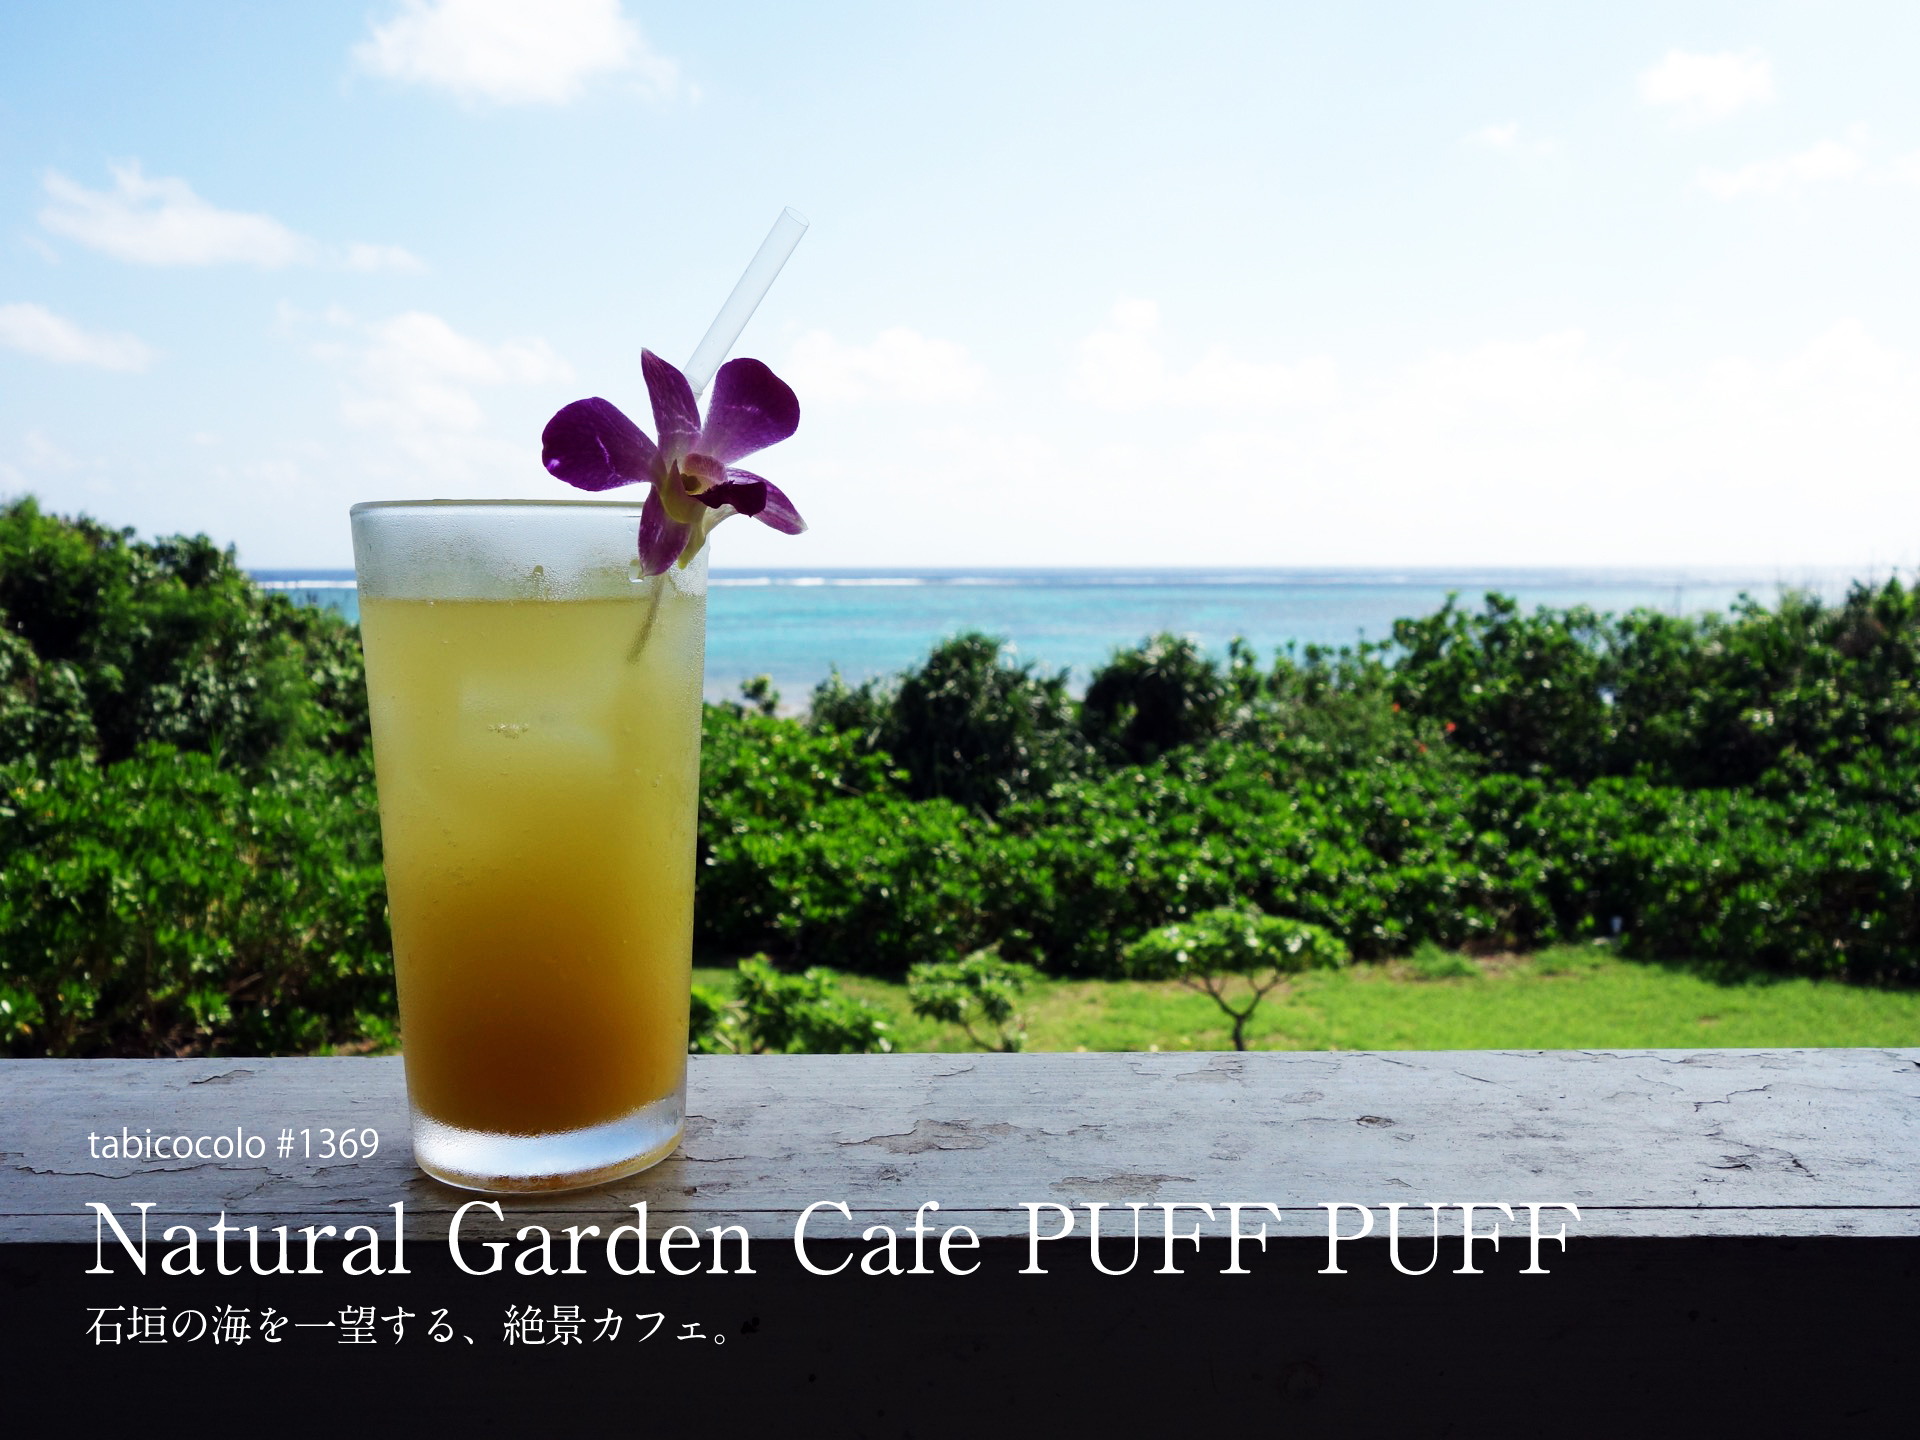 Natural Garden Cafe PUFF PUFF